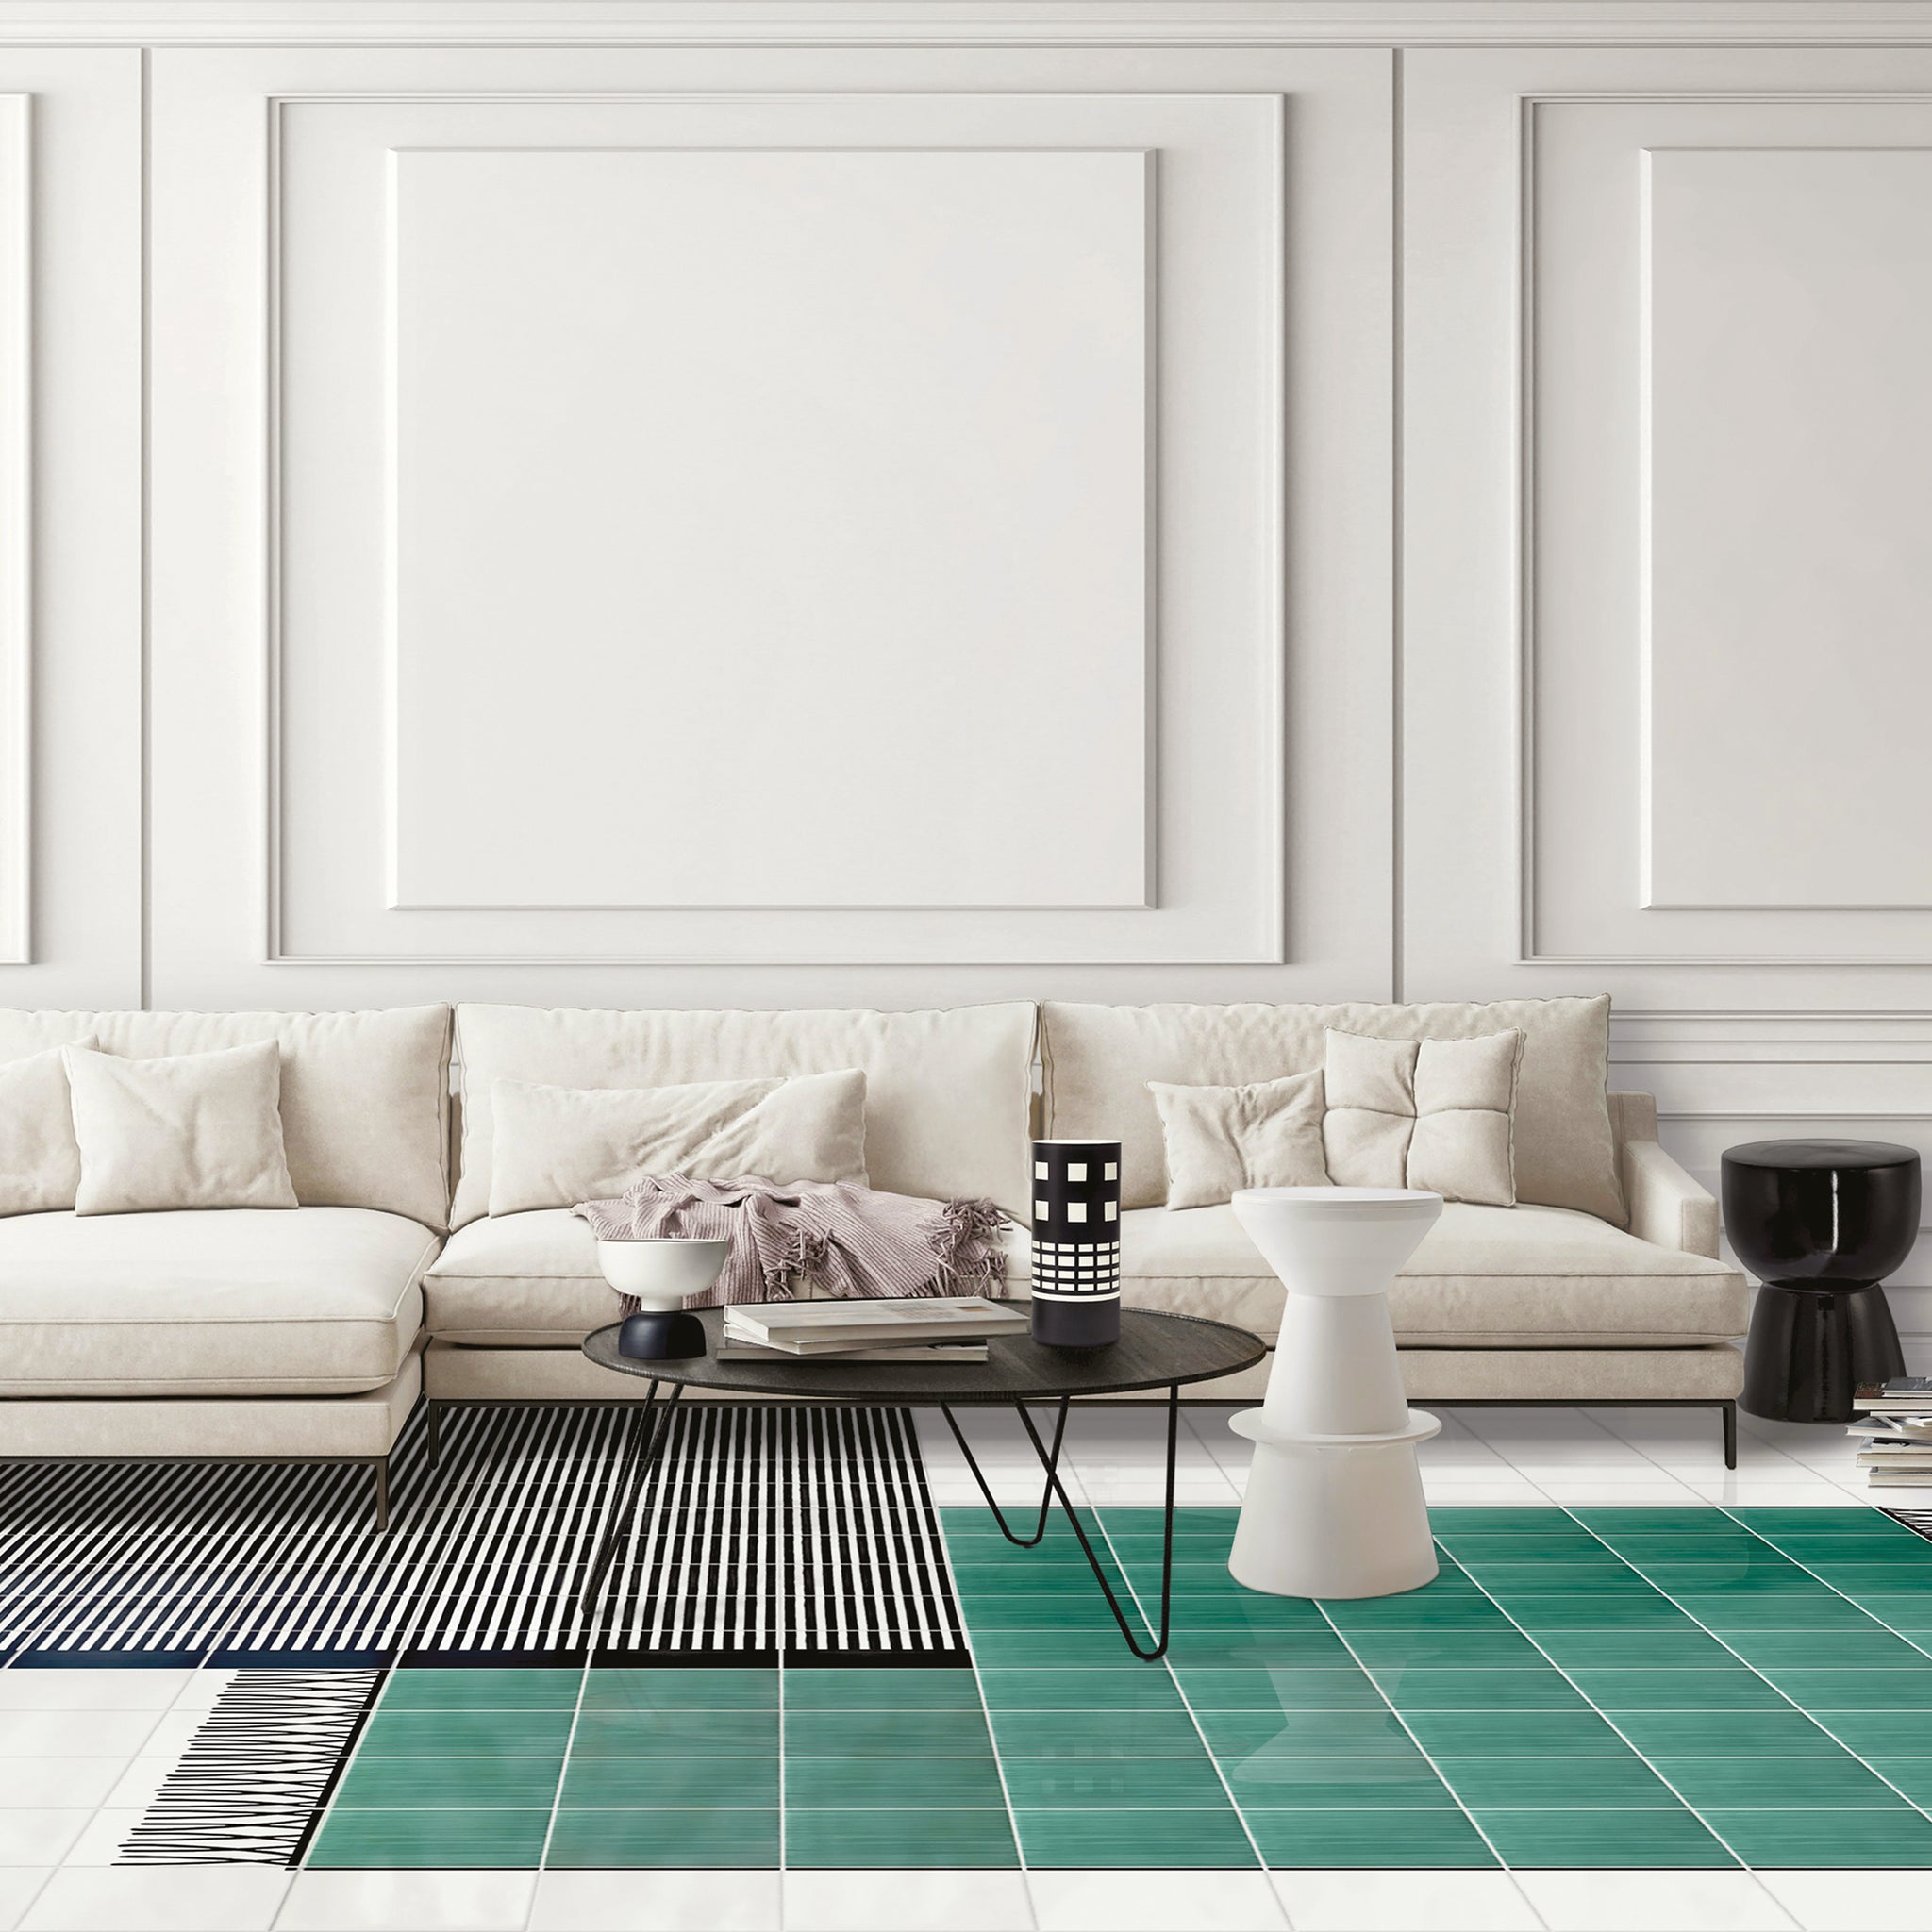 Carpet Total Green Ceramic Composition by Giuliano Andrea dell’Uva 160 x 120 - Alternative view 3